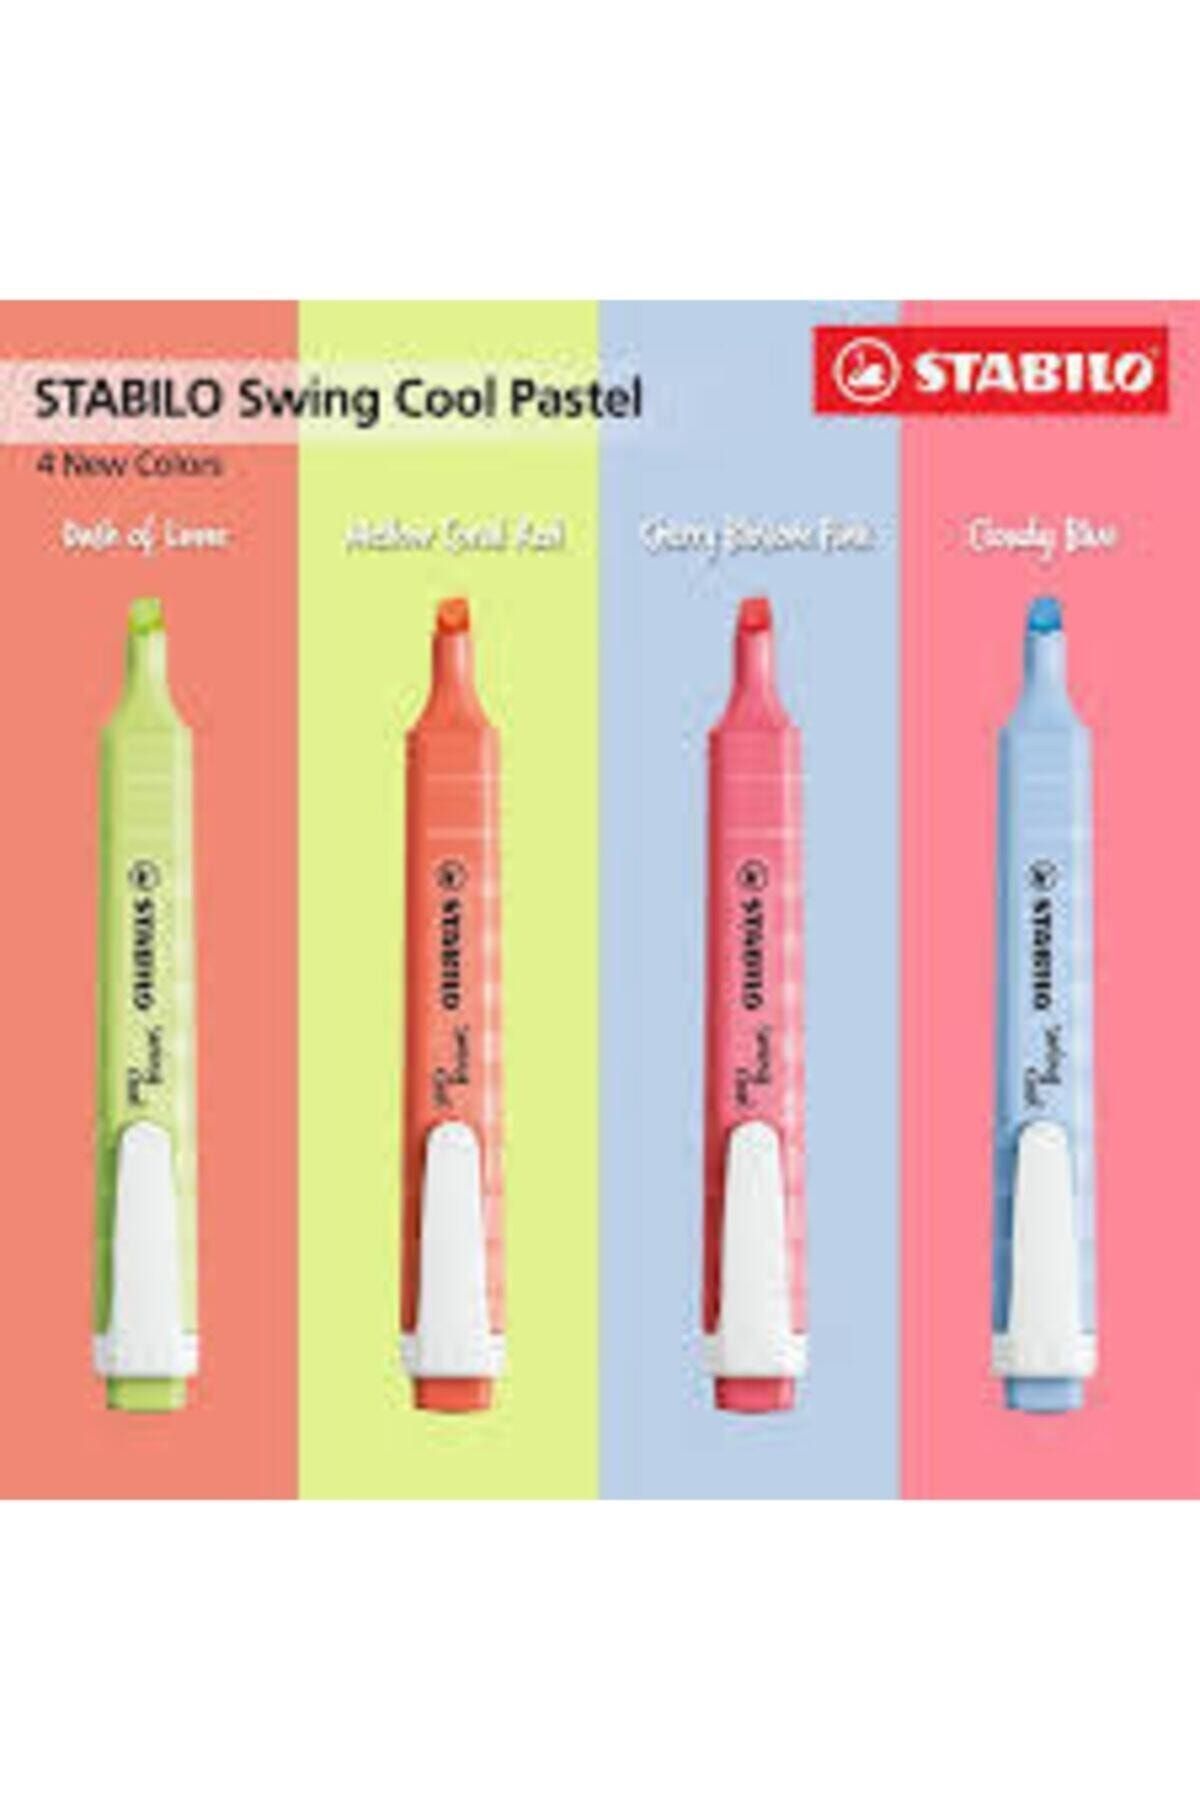 Stabilo Swing Cool Yeni Renkler 4'lü Set Textmarker Highlighter Kuruma Önleme Teknolojili